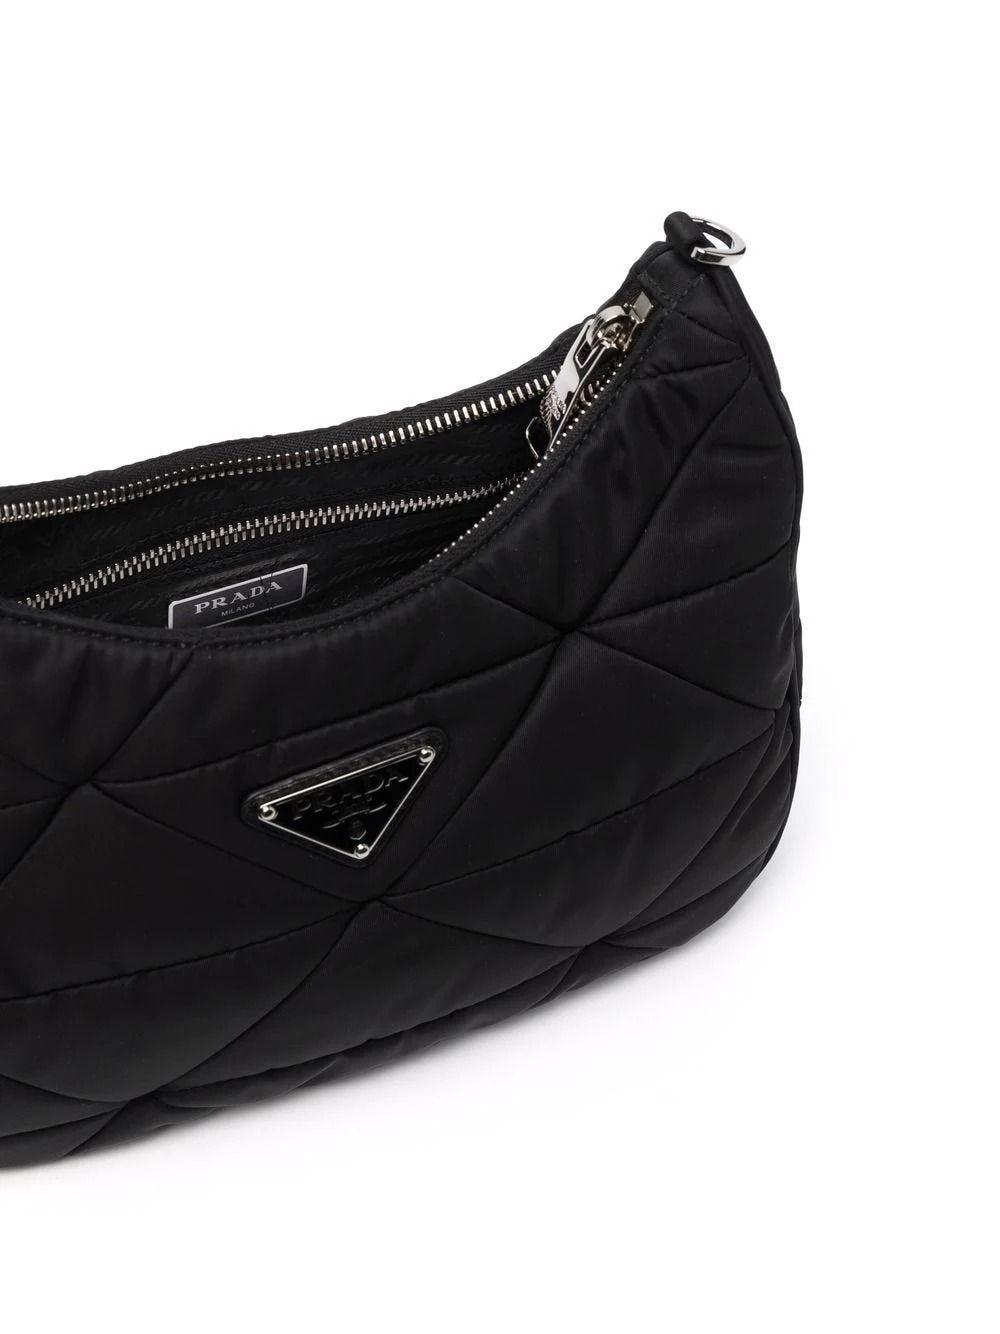 Prada Black Re-nylon Padded Hobo Bag | Lyst